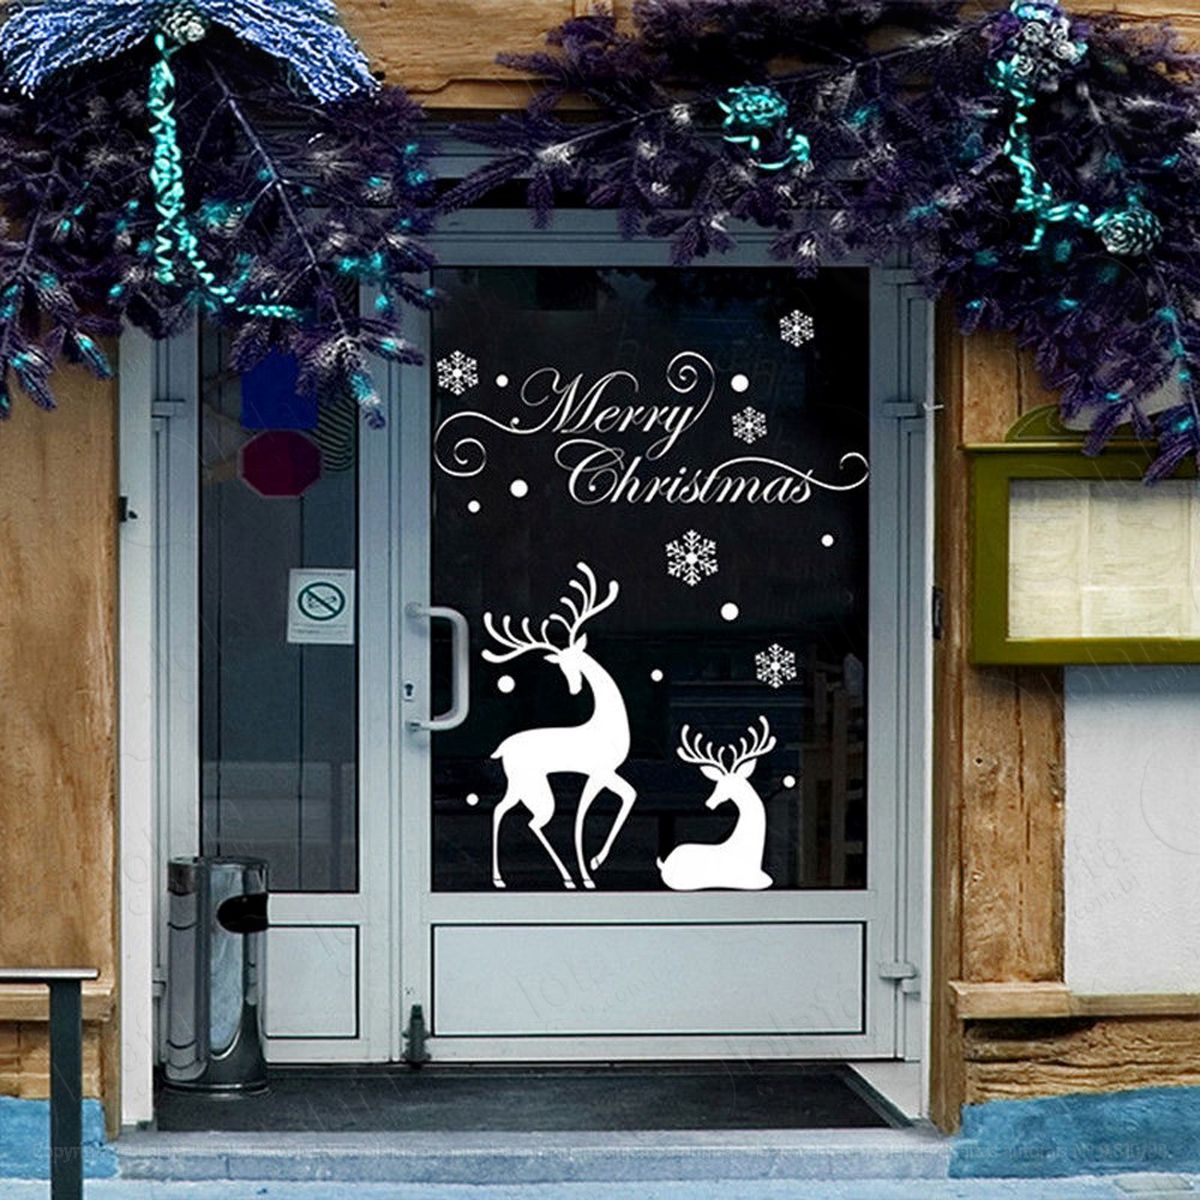 renas duplas adesivo de natal para vitrine, parede, porta de vidro - decoração natalina mod:232